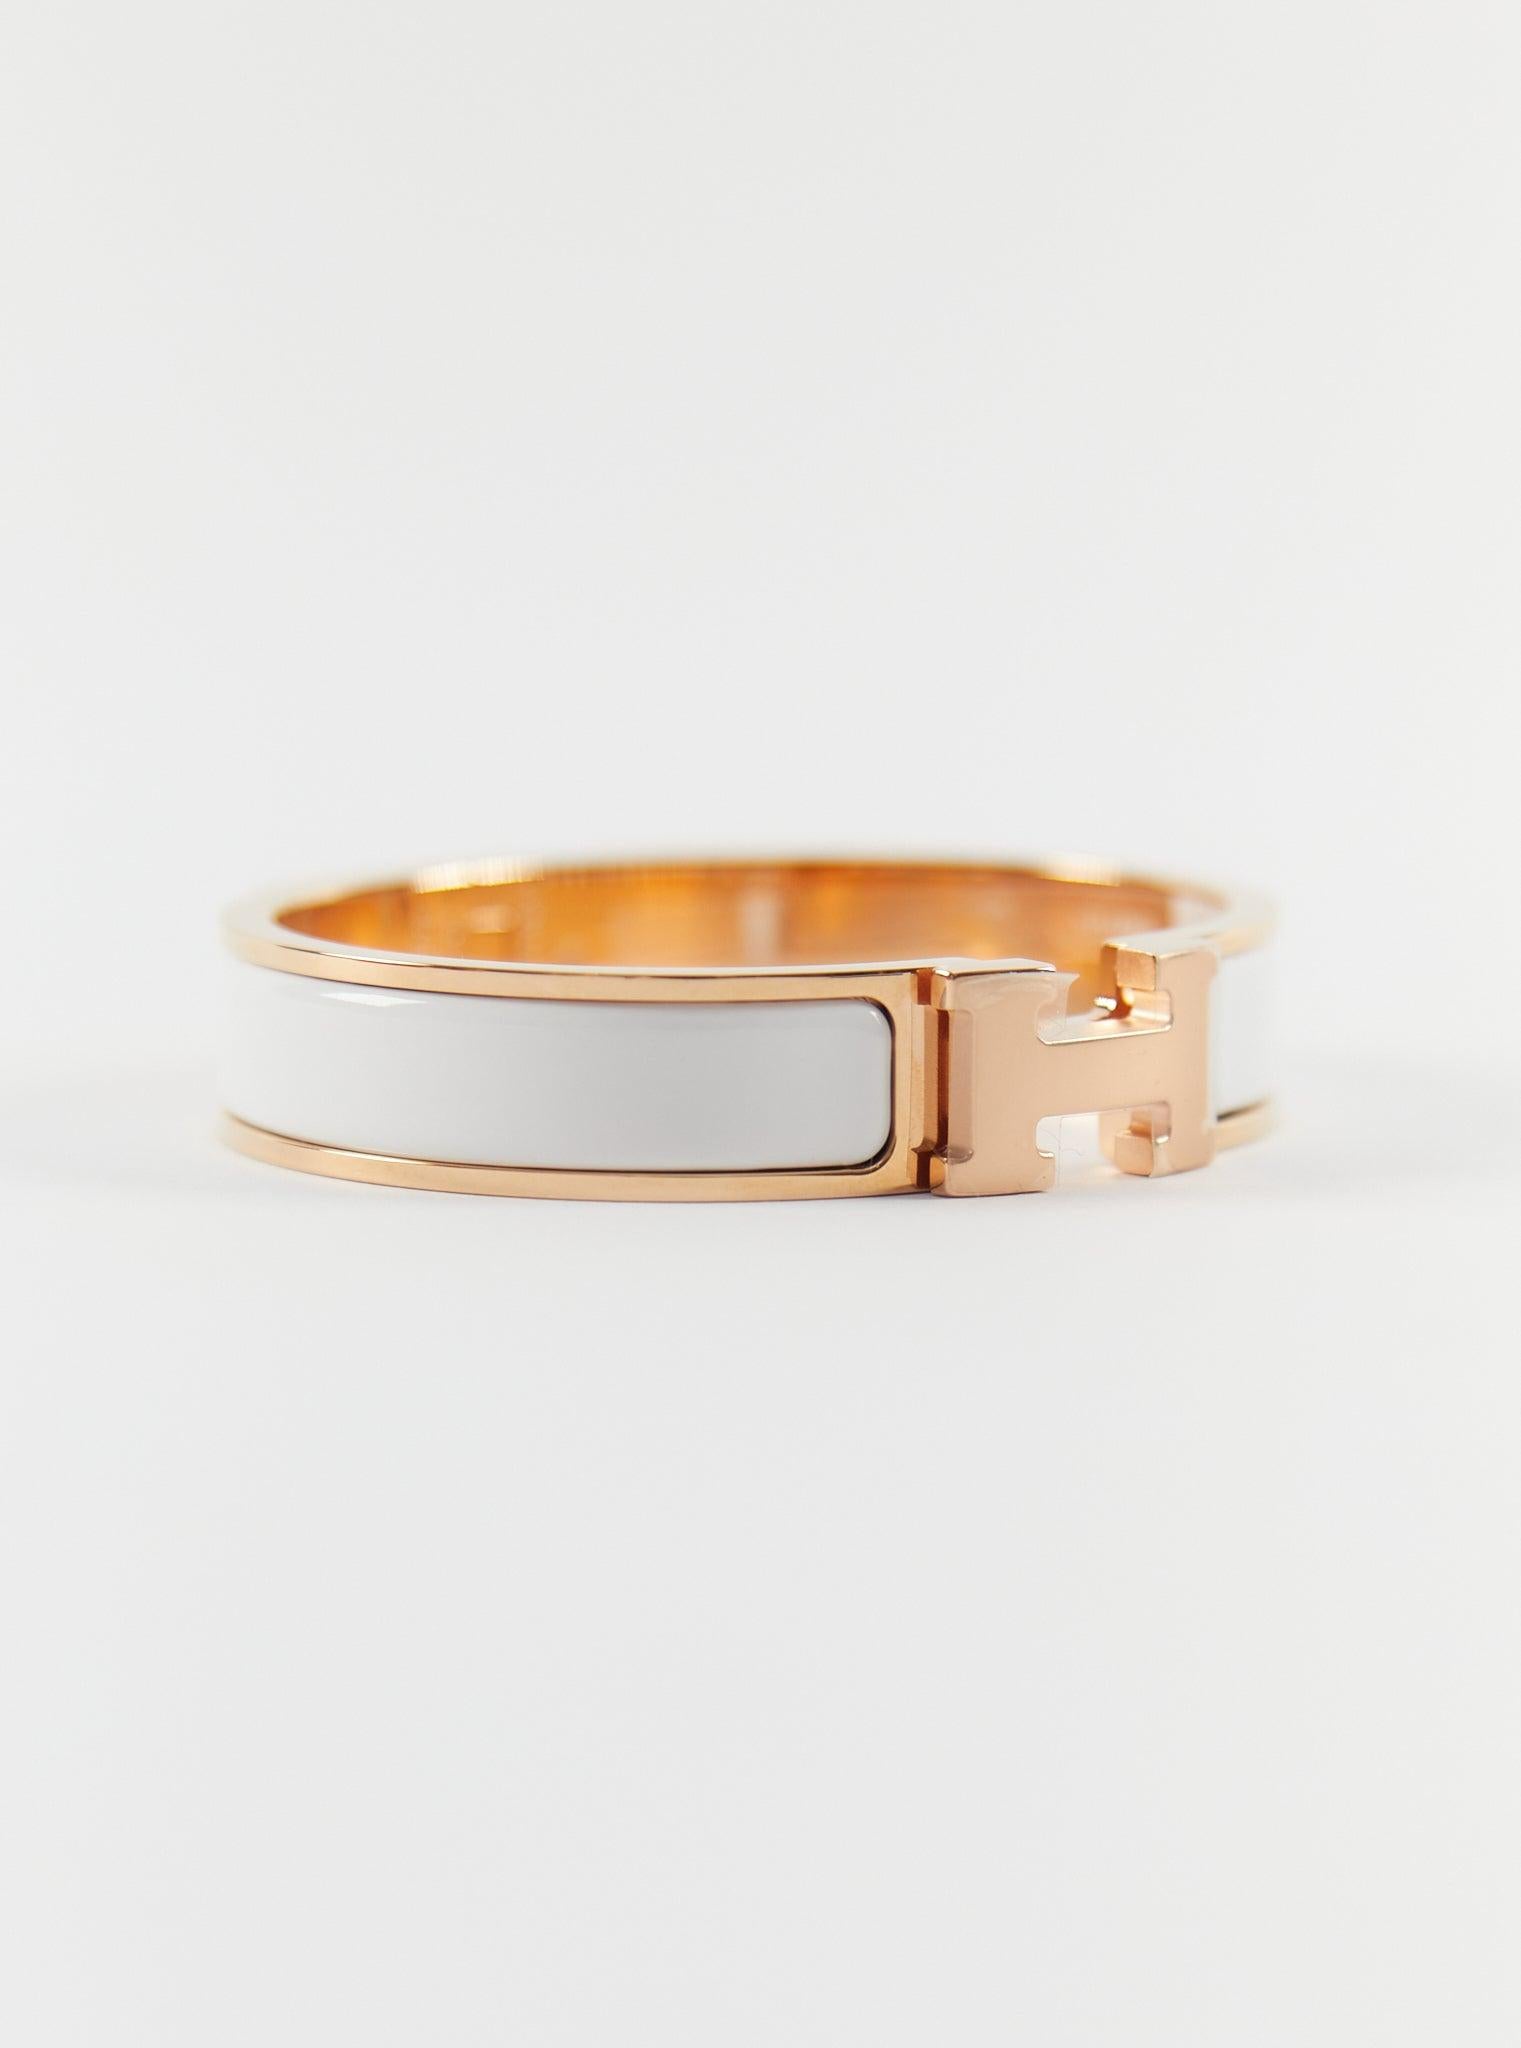 Bracelet Clic H PM d'Hermès en or blanc et rose

Taille du poignet : 16.8 cm  Largeur : 12 mm

Fabriqué en France